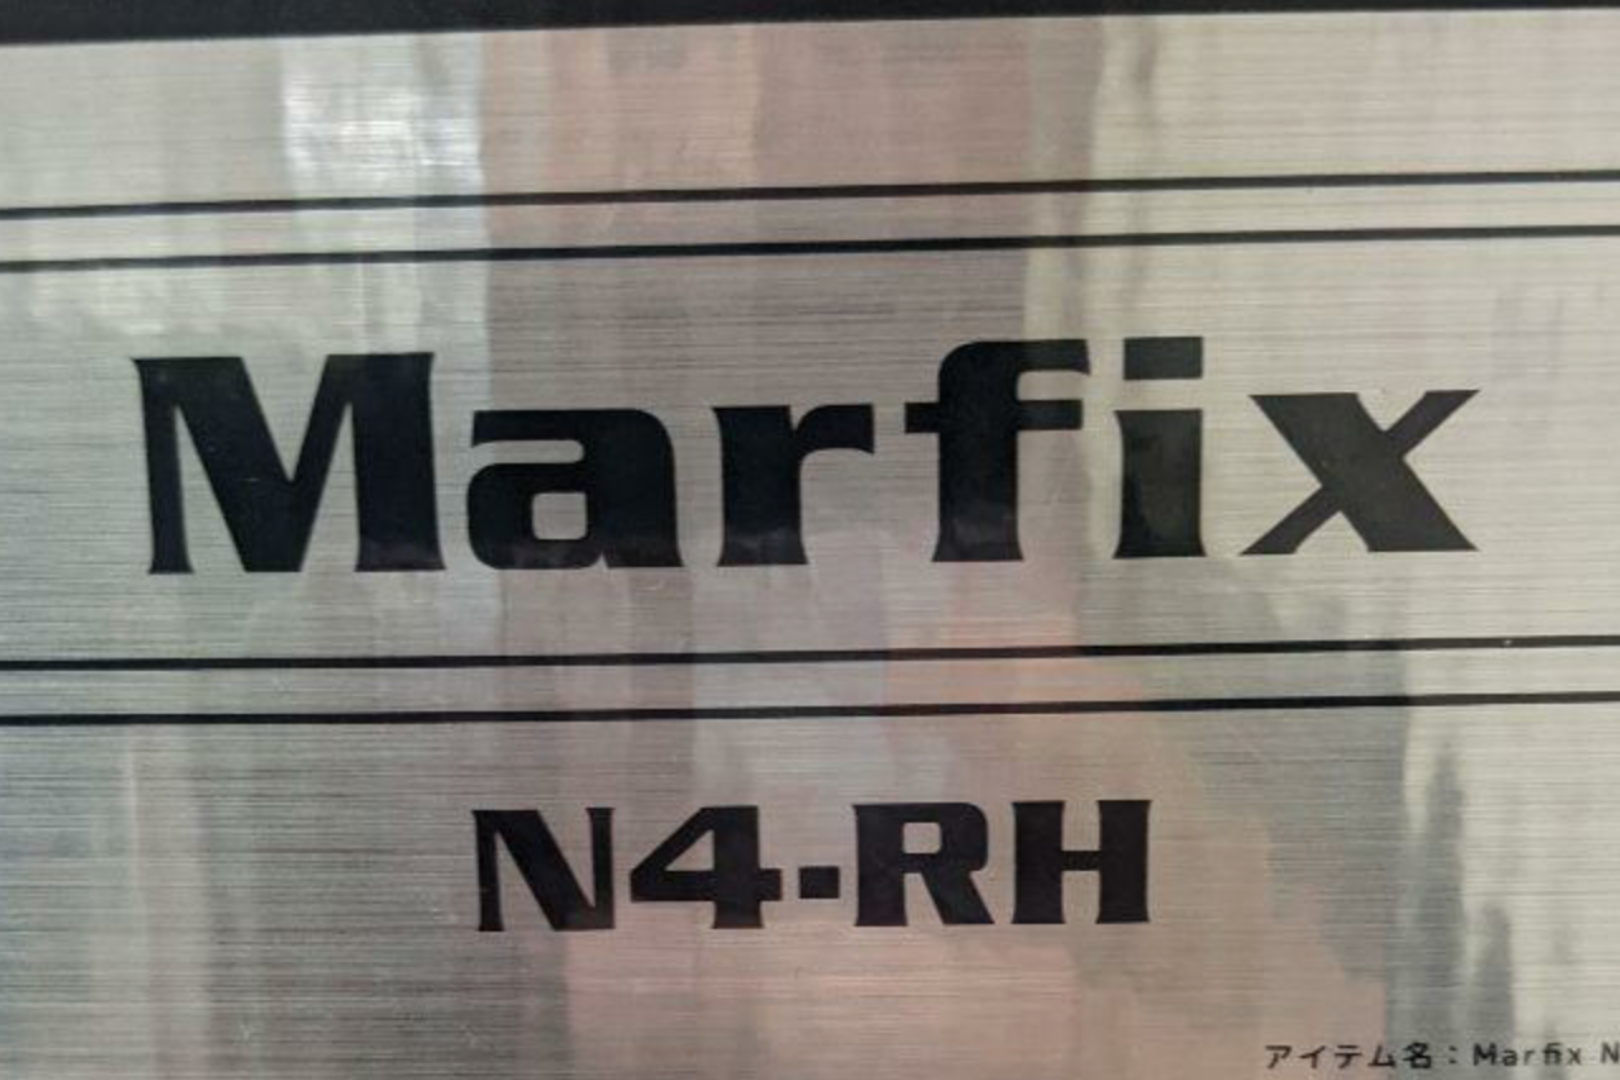 Marfix N4-RH